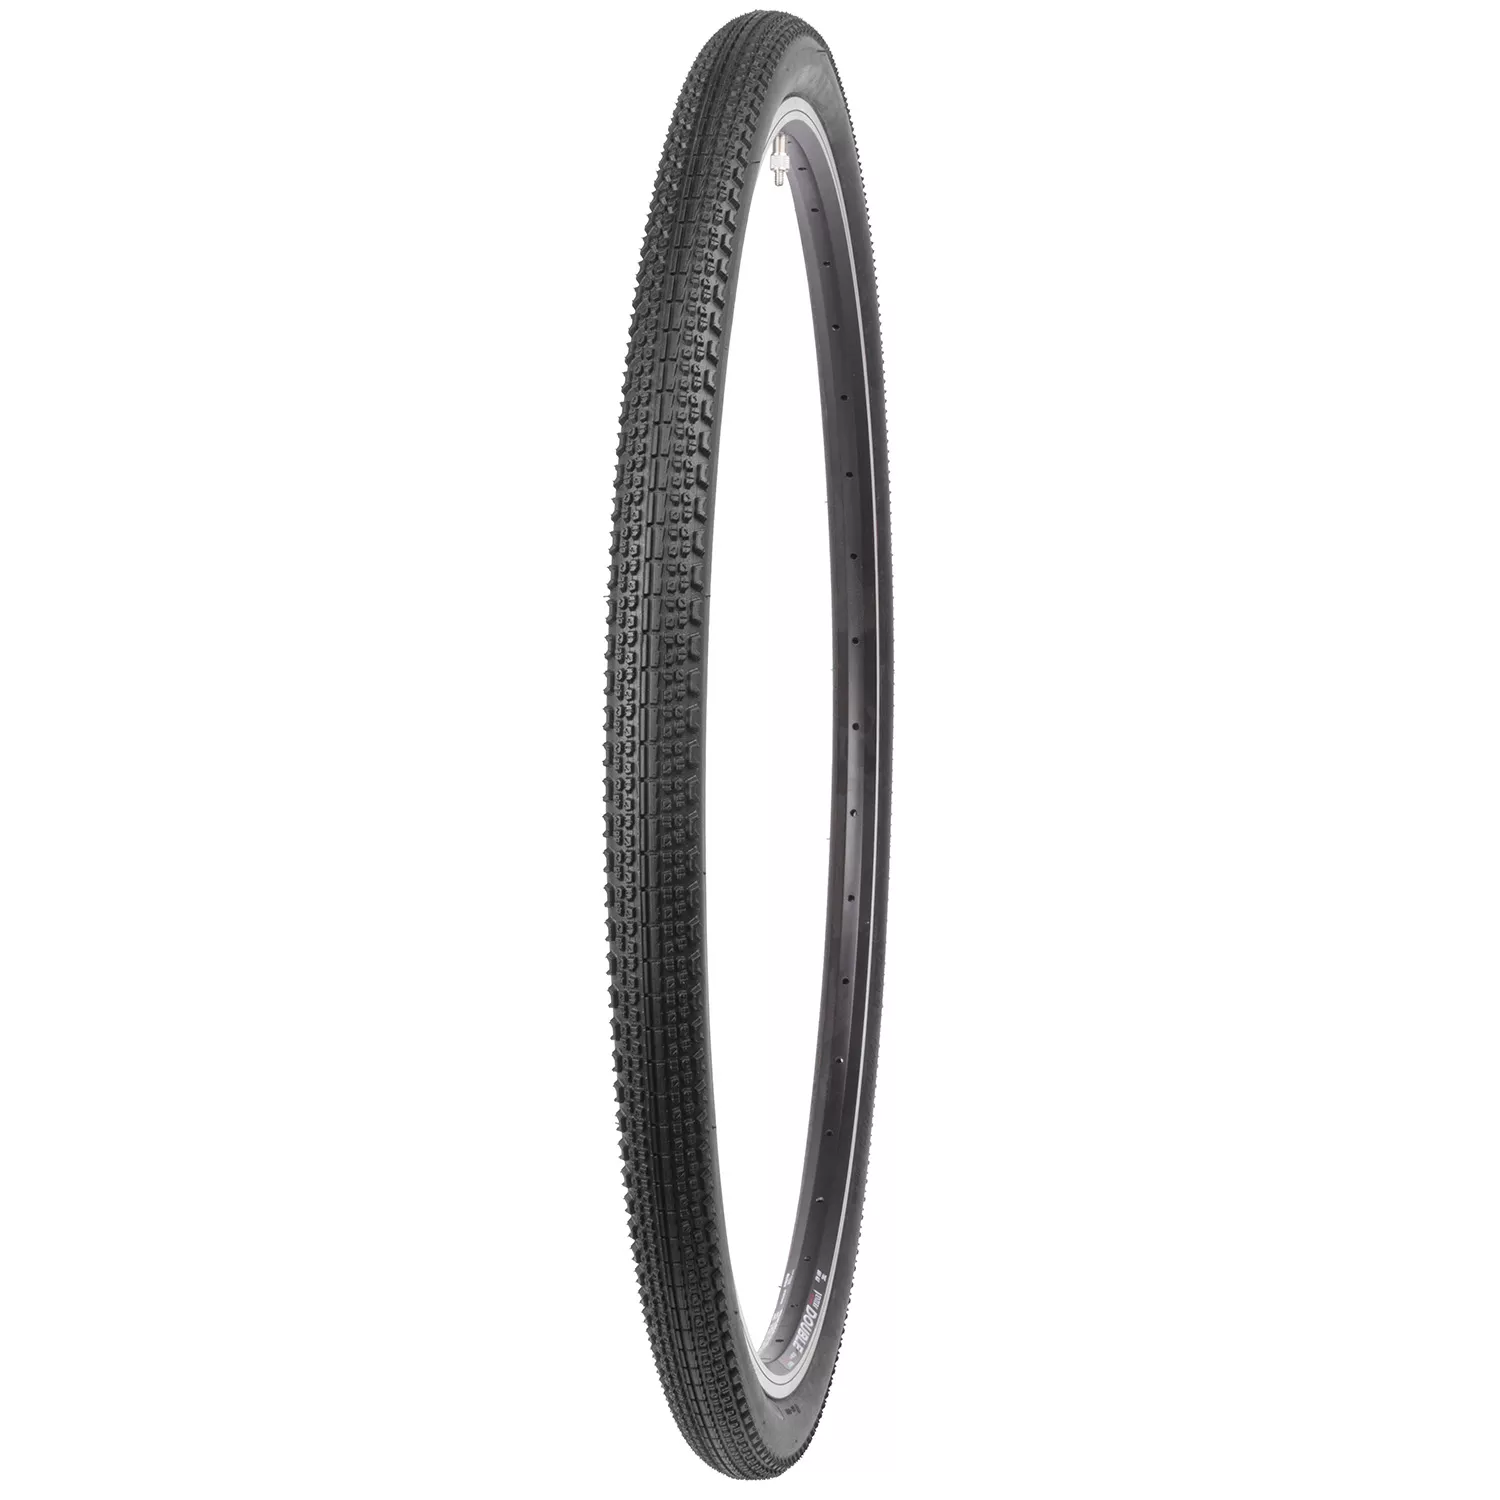 Flintridge PRO 120TPI 700 x 40C folding tire black